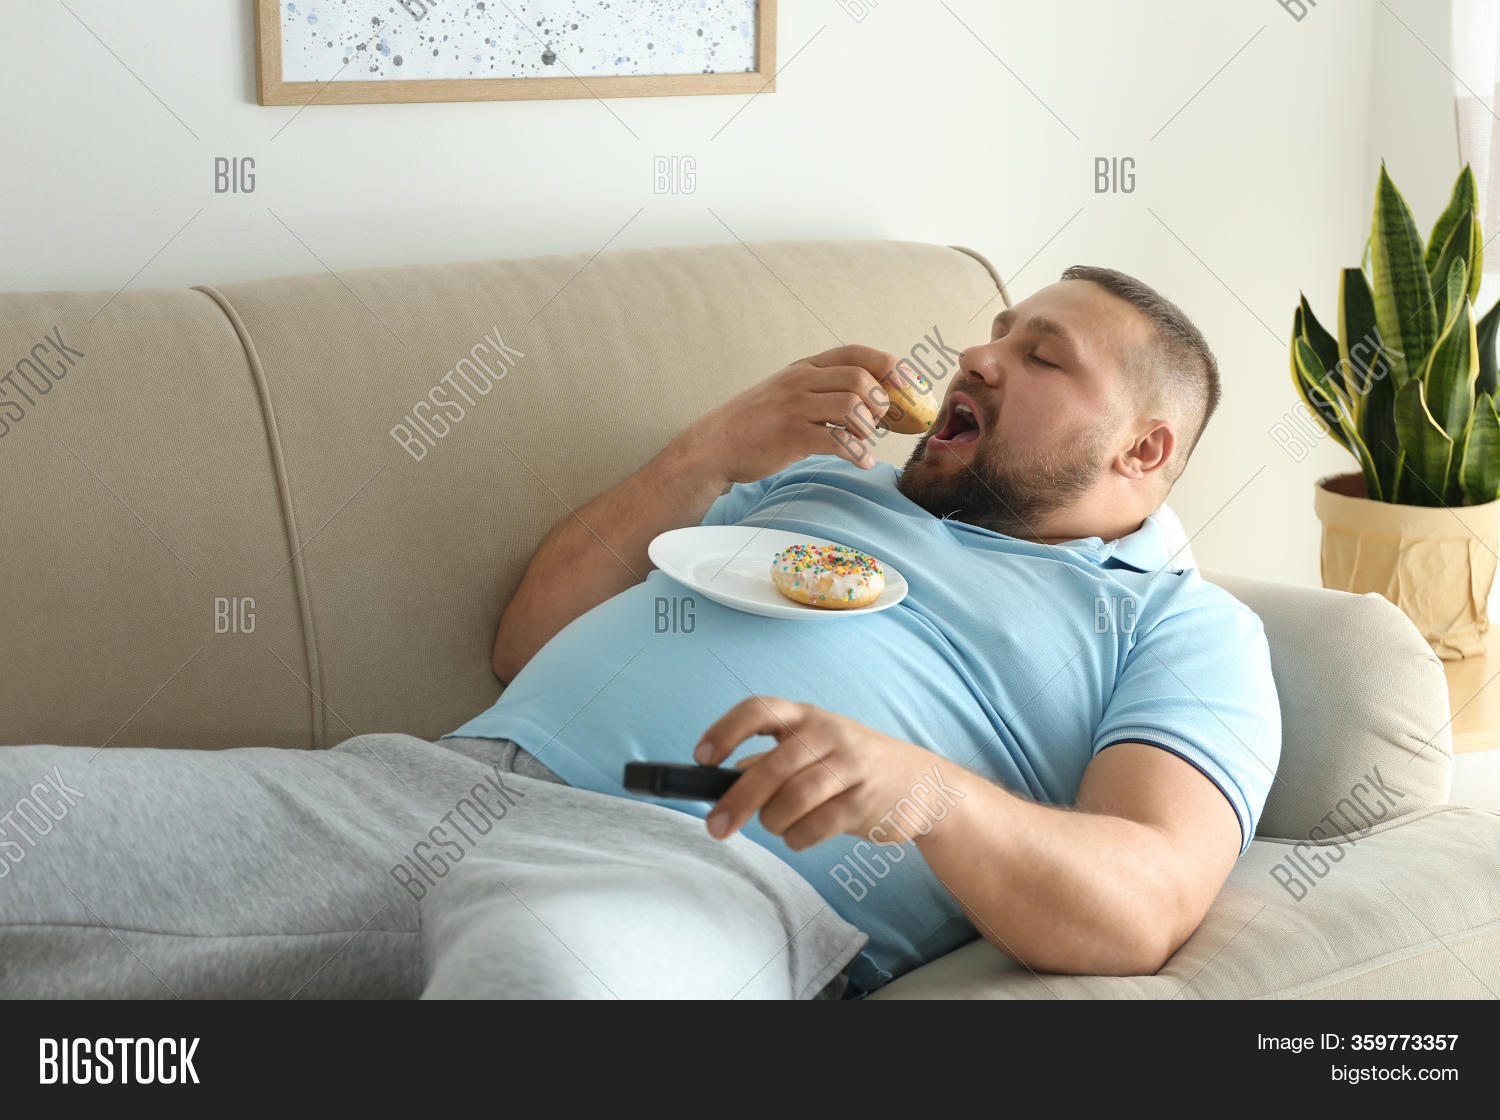 clayton dunbar add photo fat guy on couch